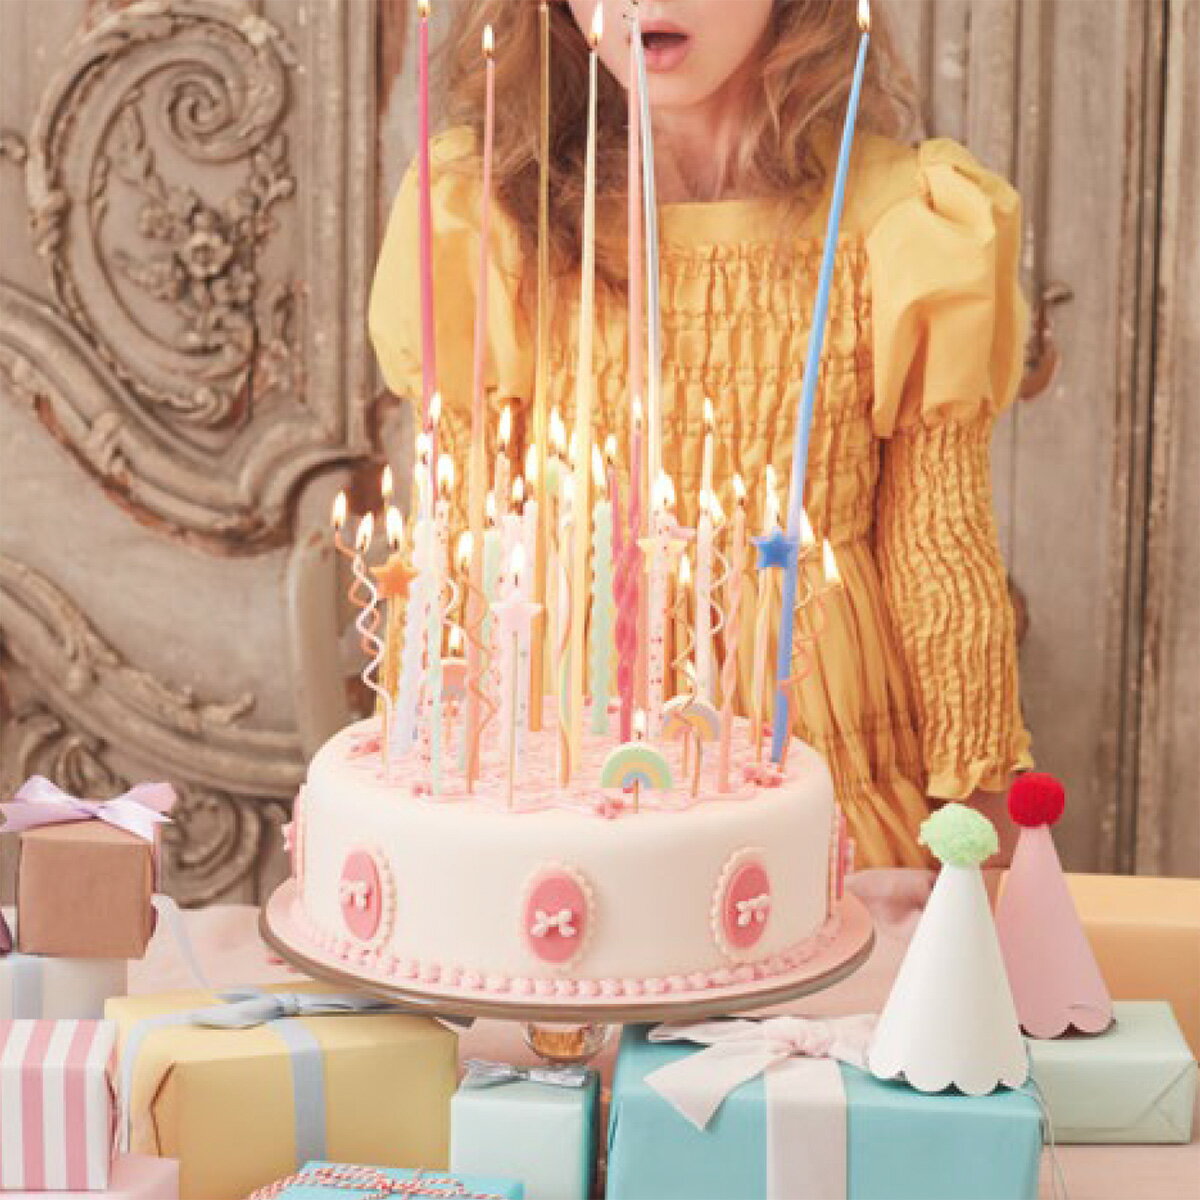 バースデーキャンドル パステル グルグル うねうね サプライズパーティ 誕生日会 誕生日ケーキ ケーキトッパー バースデーケーキ デコレーション飾り 飾り付け merimeri メリメリPastel Swirly 20 Birthday Candles